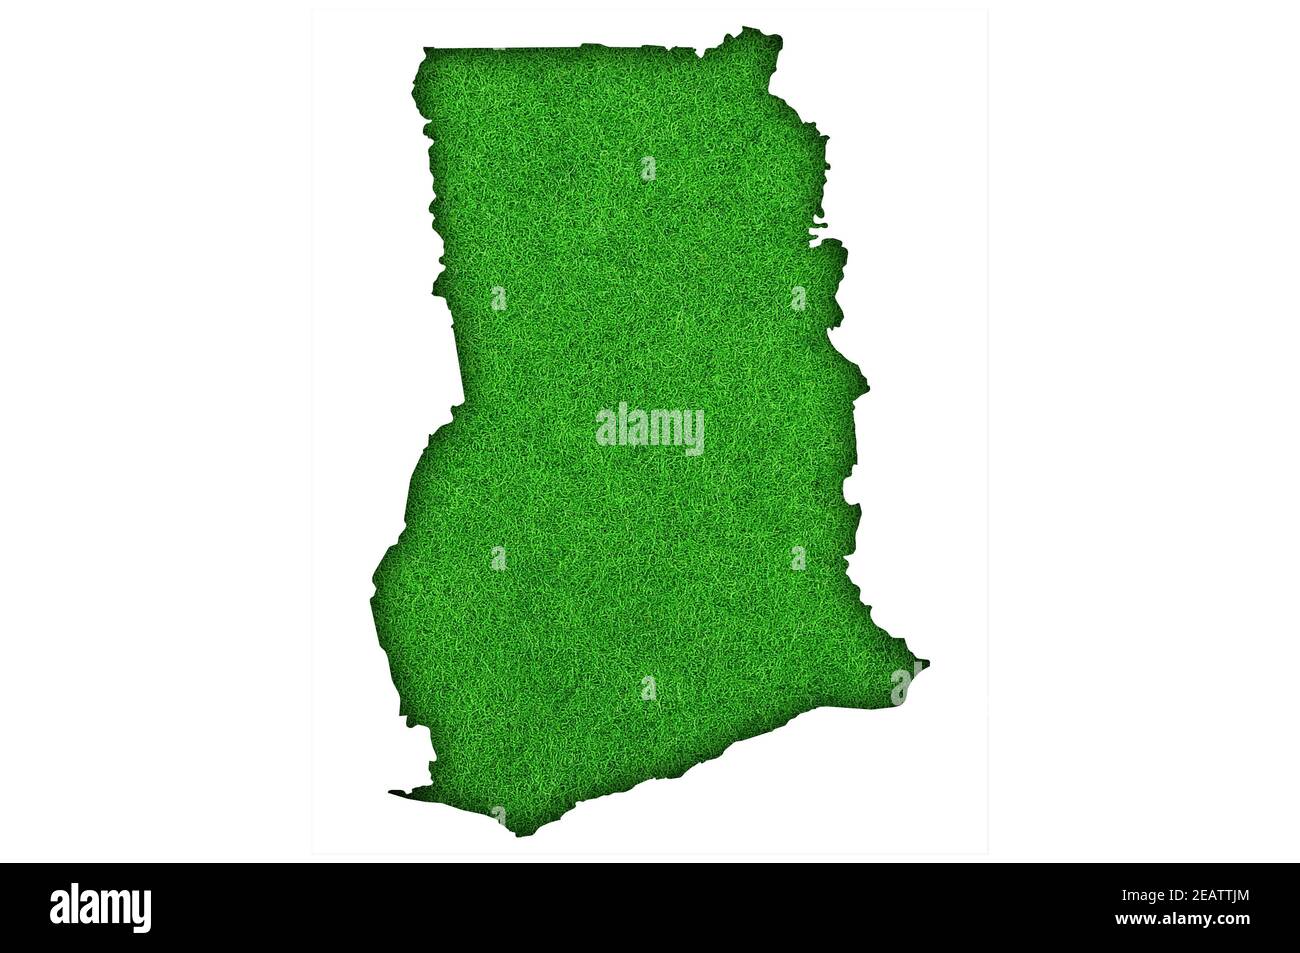 Carte du Ghana sur le feutre vert Banque D'Images